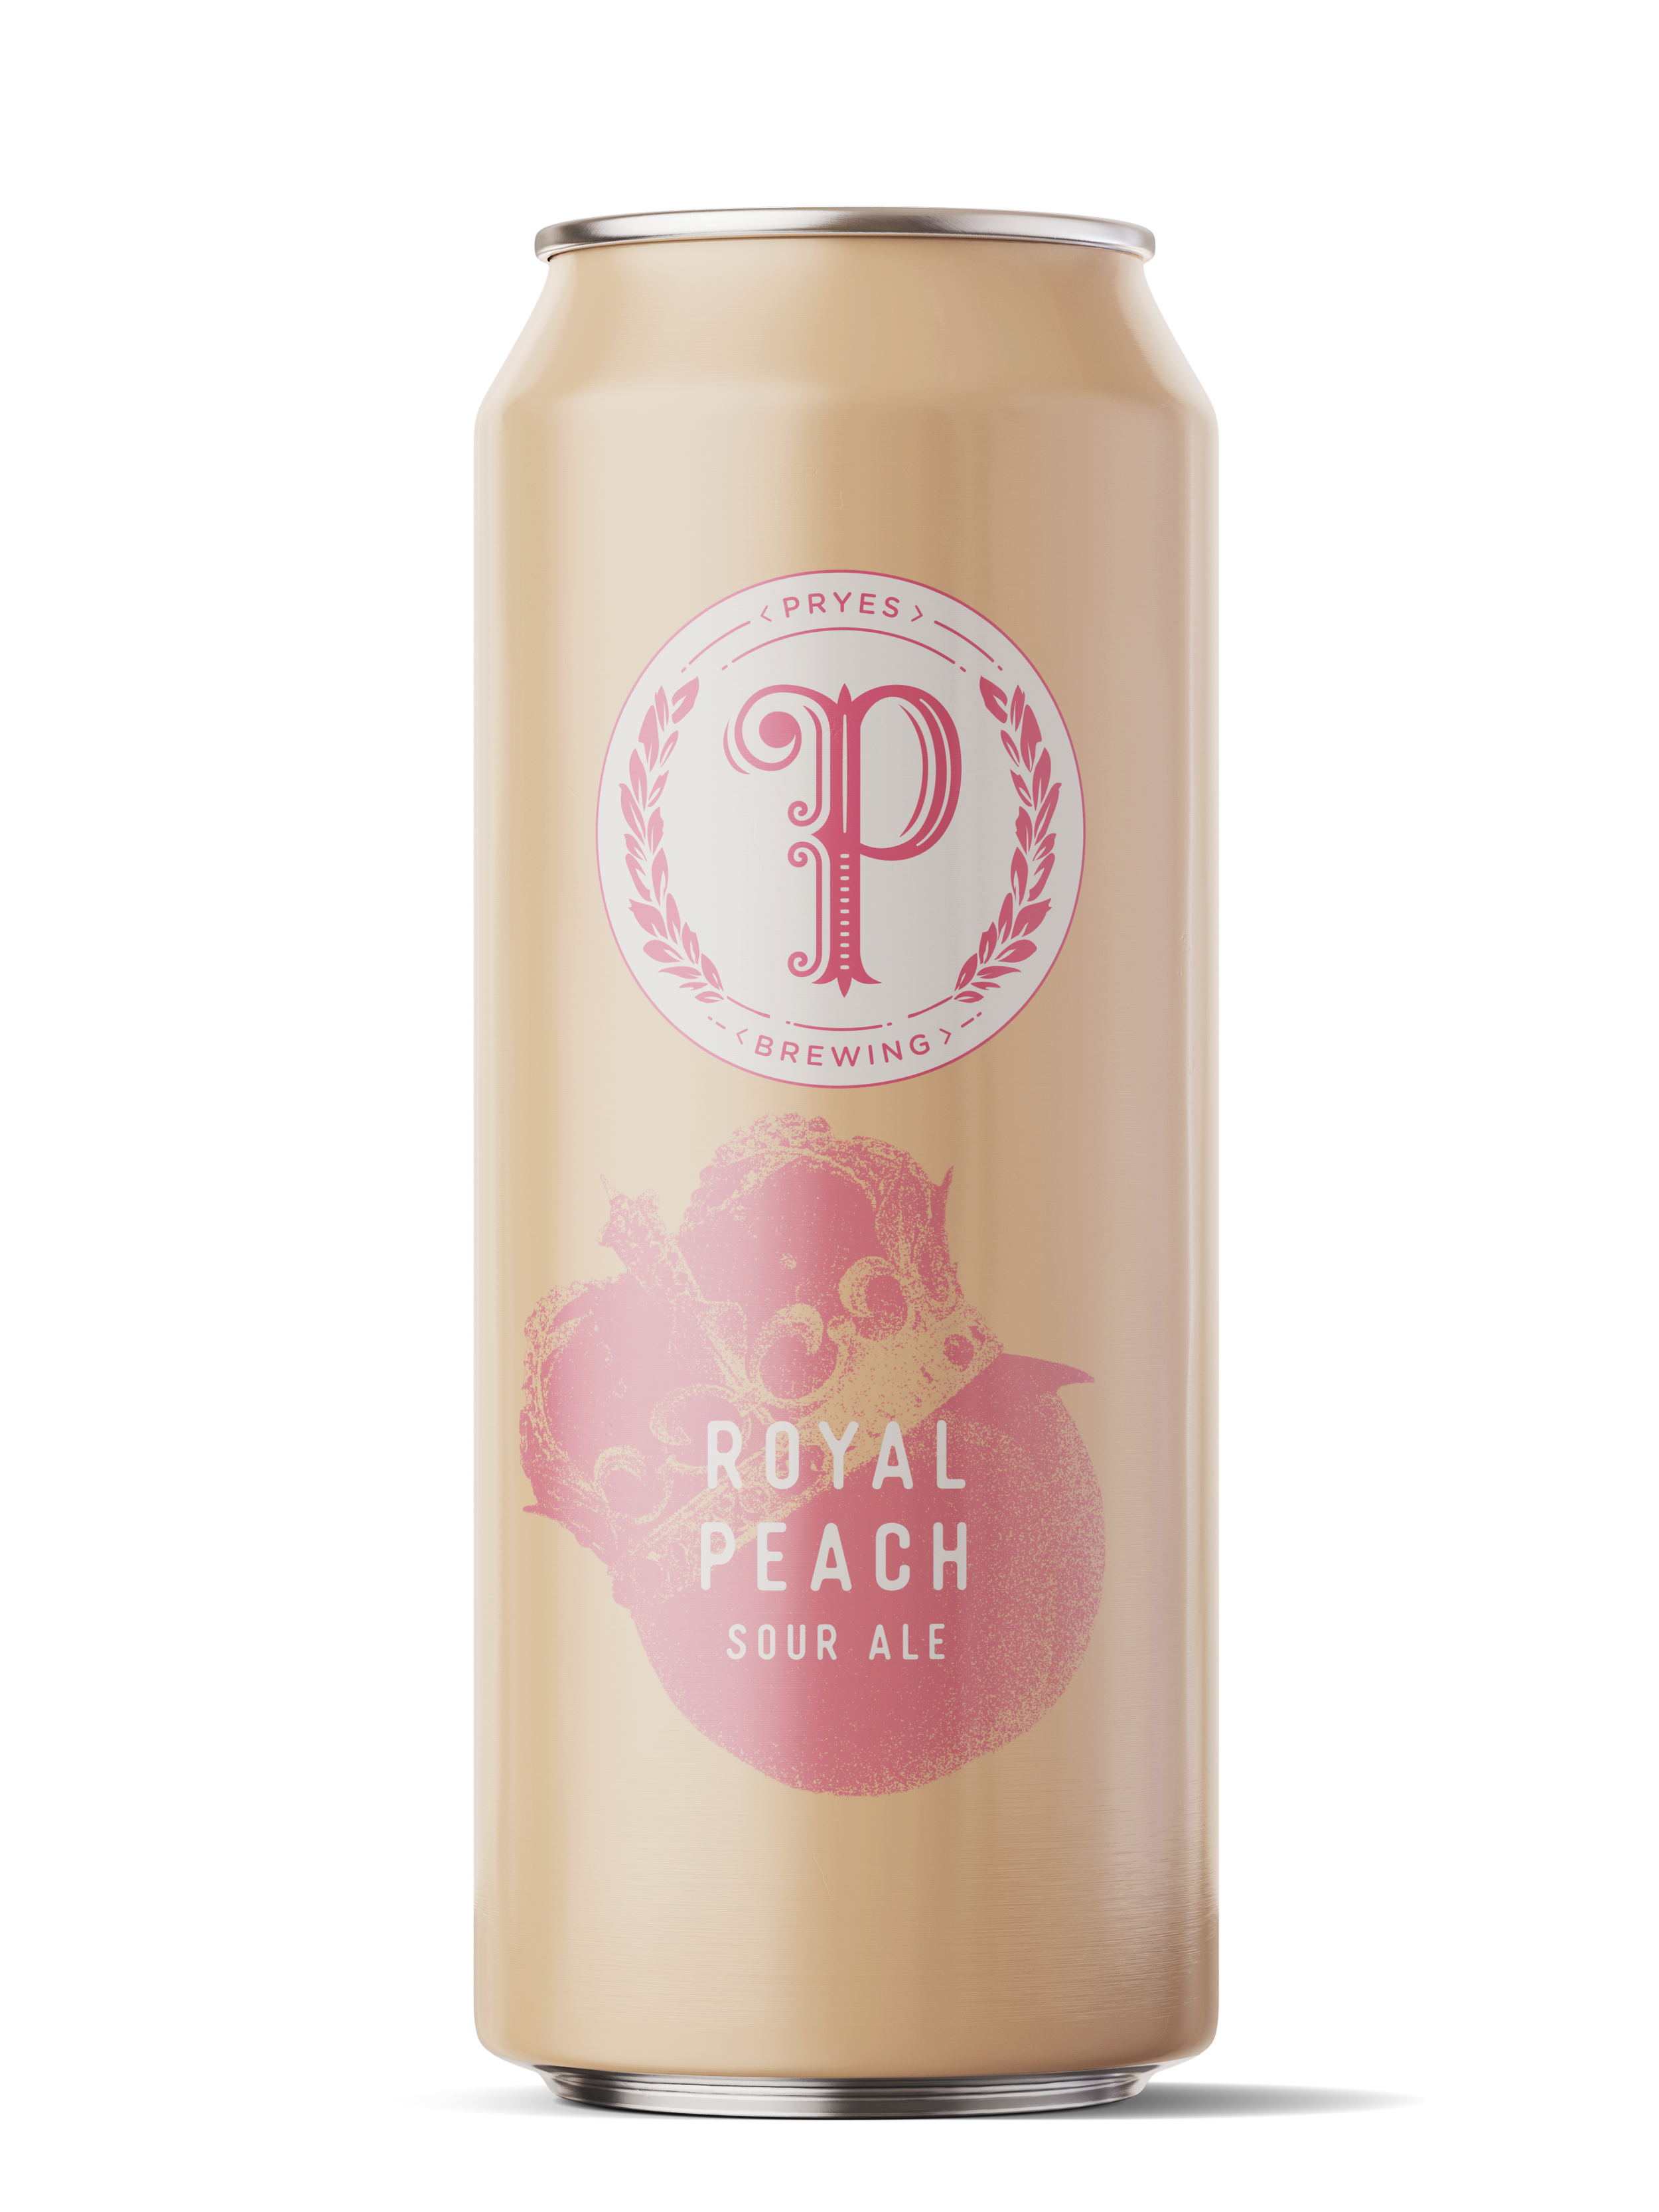 Royal Peach Sour Ale